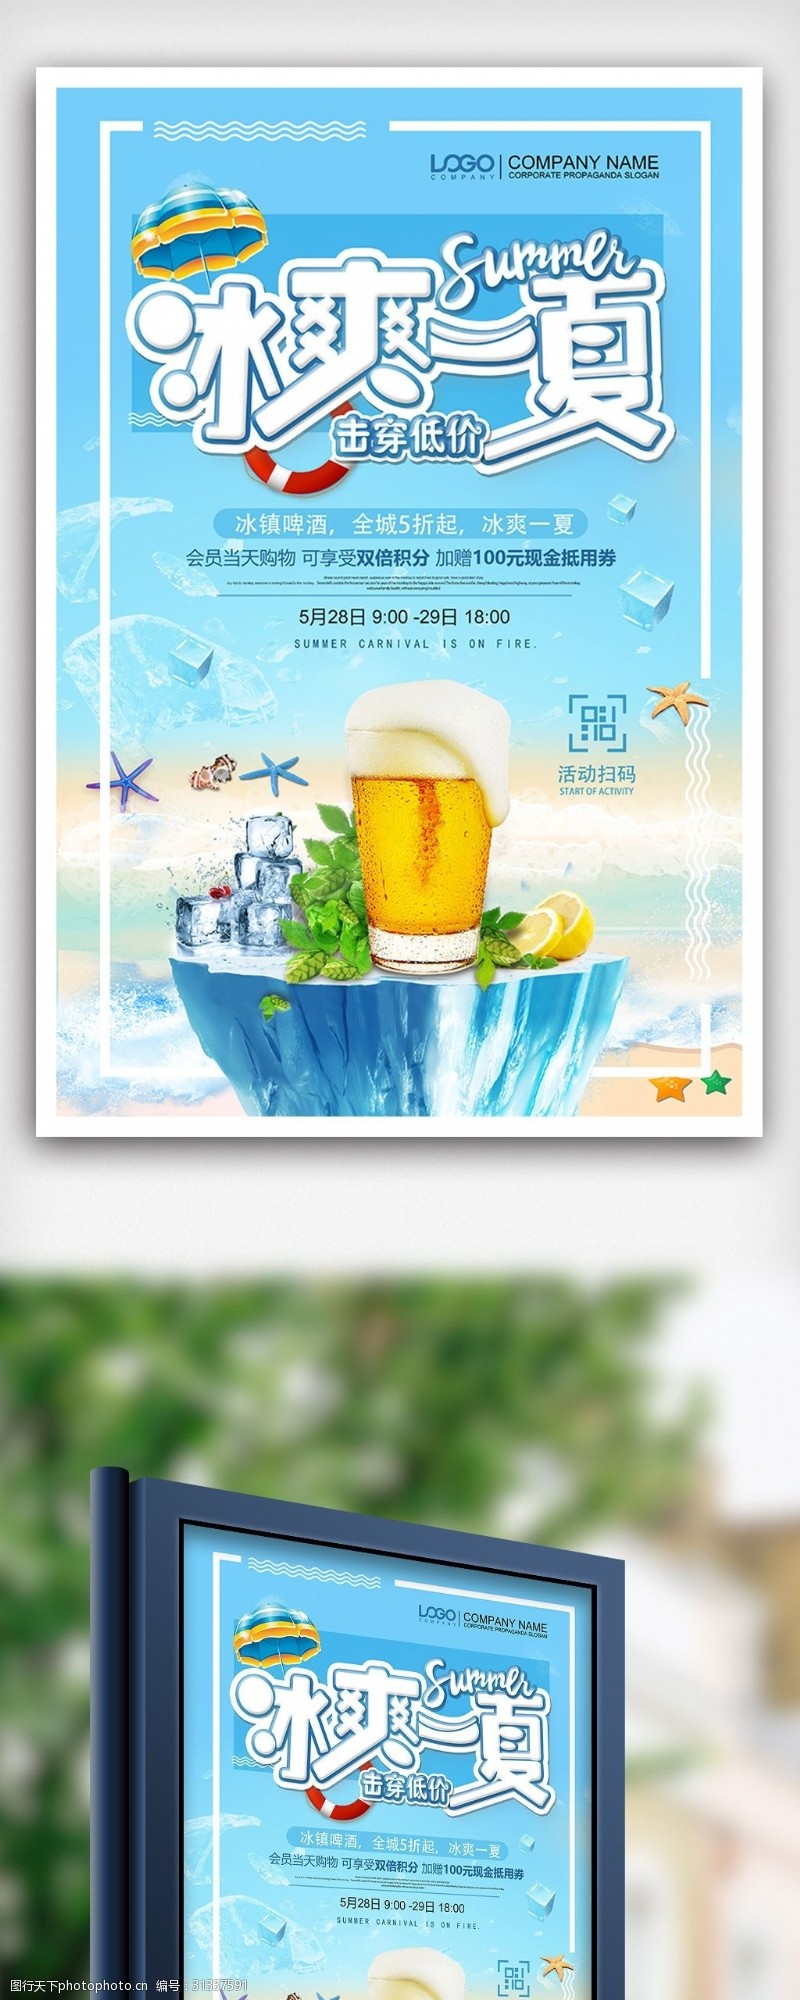 啤酒免费下载清凉夏日冰爽啤酒促销海报